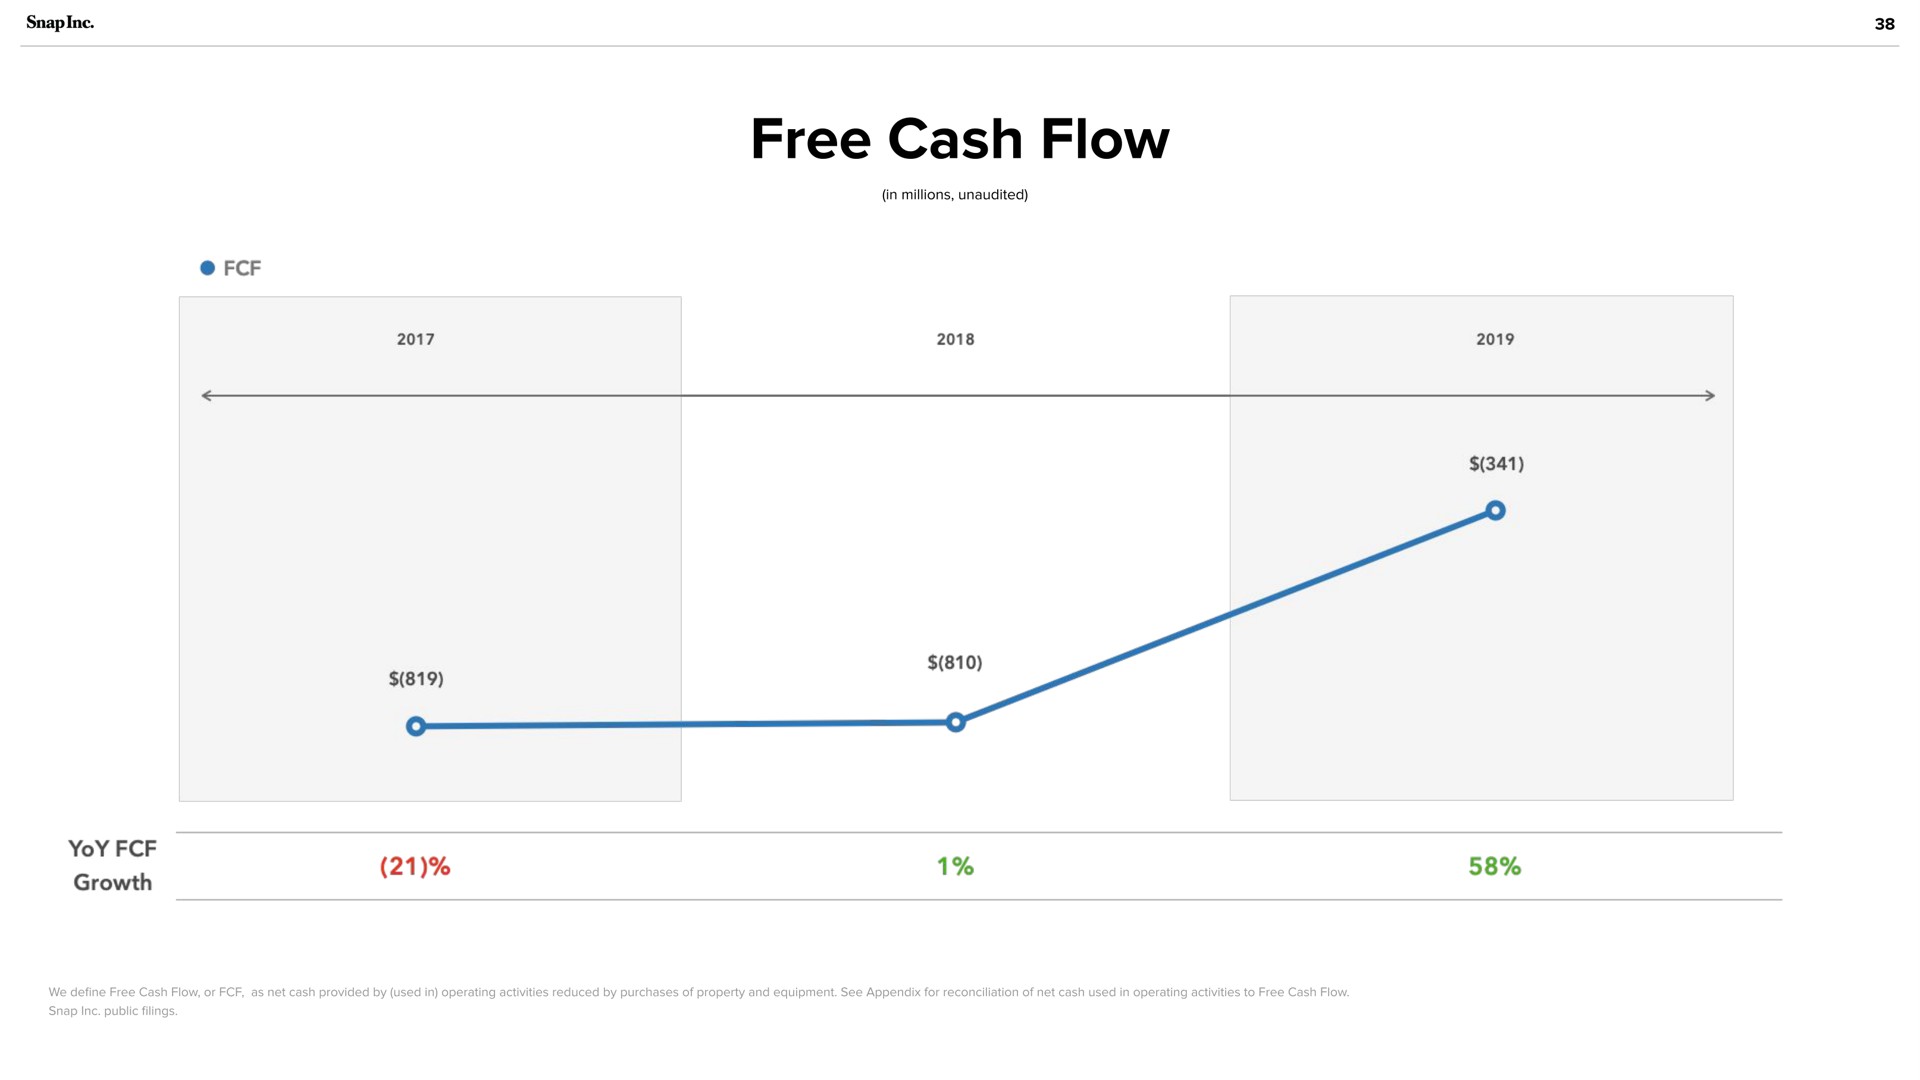 free cash flow | Snap Inc